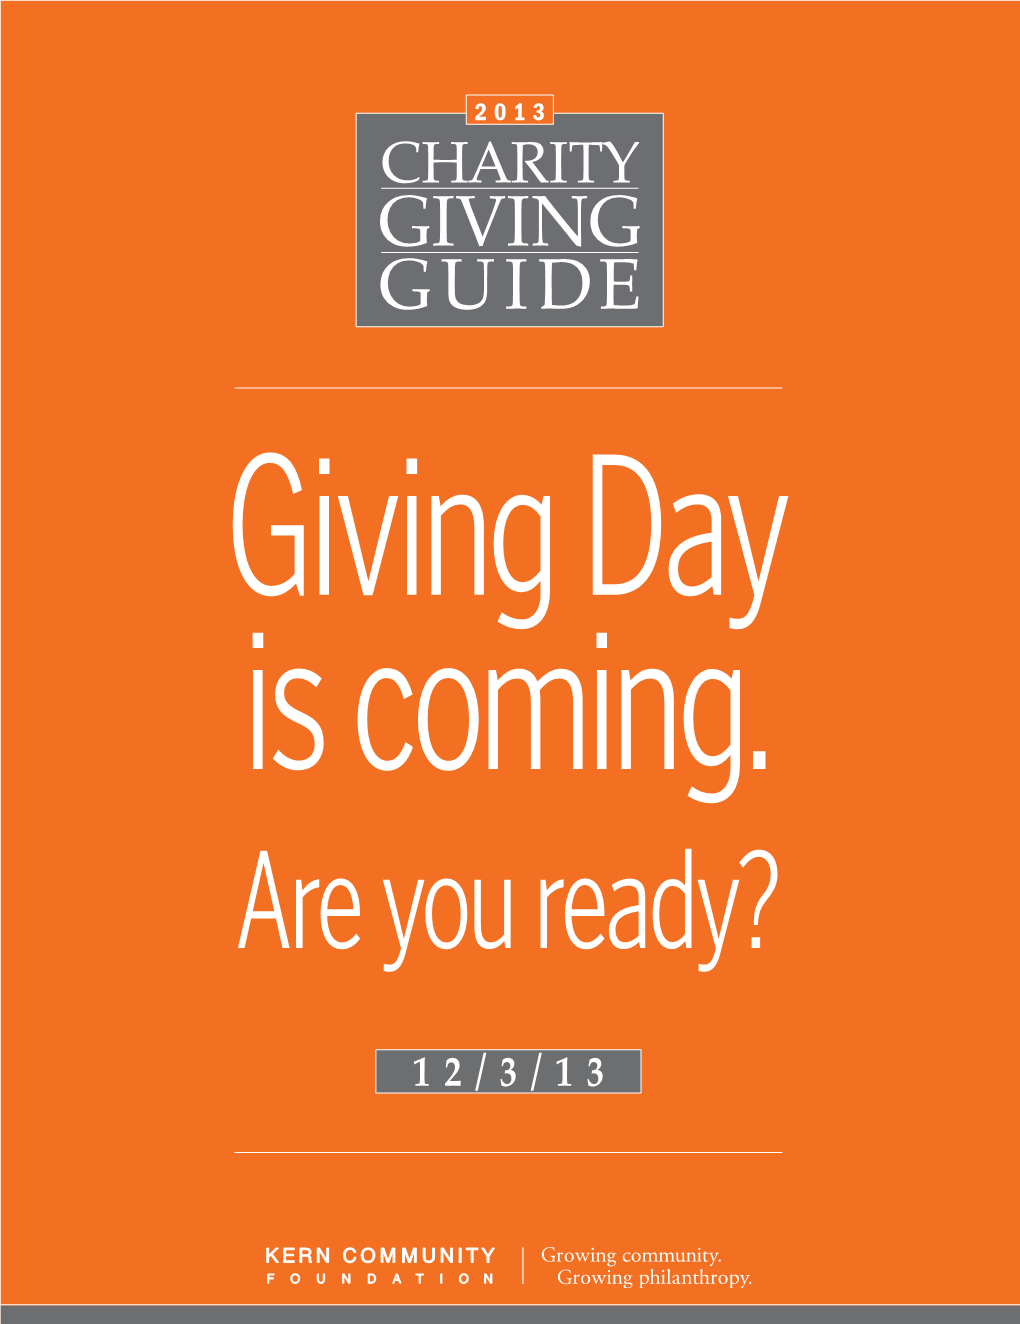 2013 Charity Giving Guide 2013 Charity Giving Guide 3